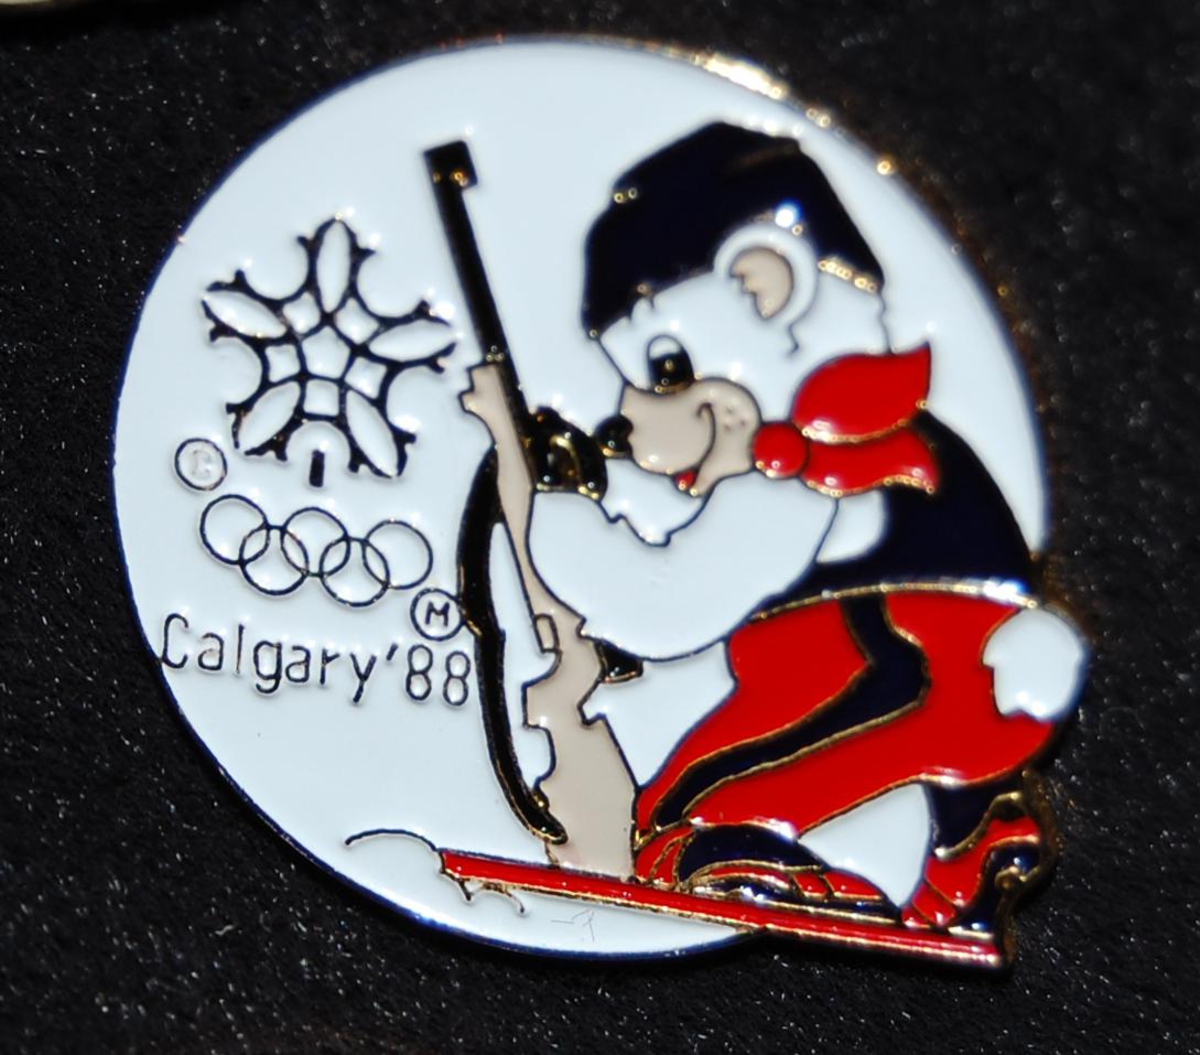 Merke med motiv av en av maskotene for de olympiske vinterleker i Calgary i 1988, Howdy og Hidy, som driver skiskyting.